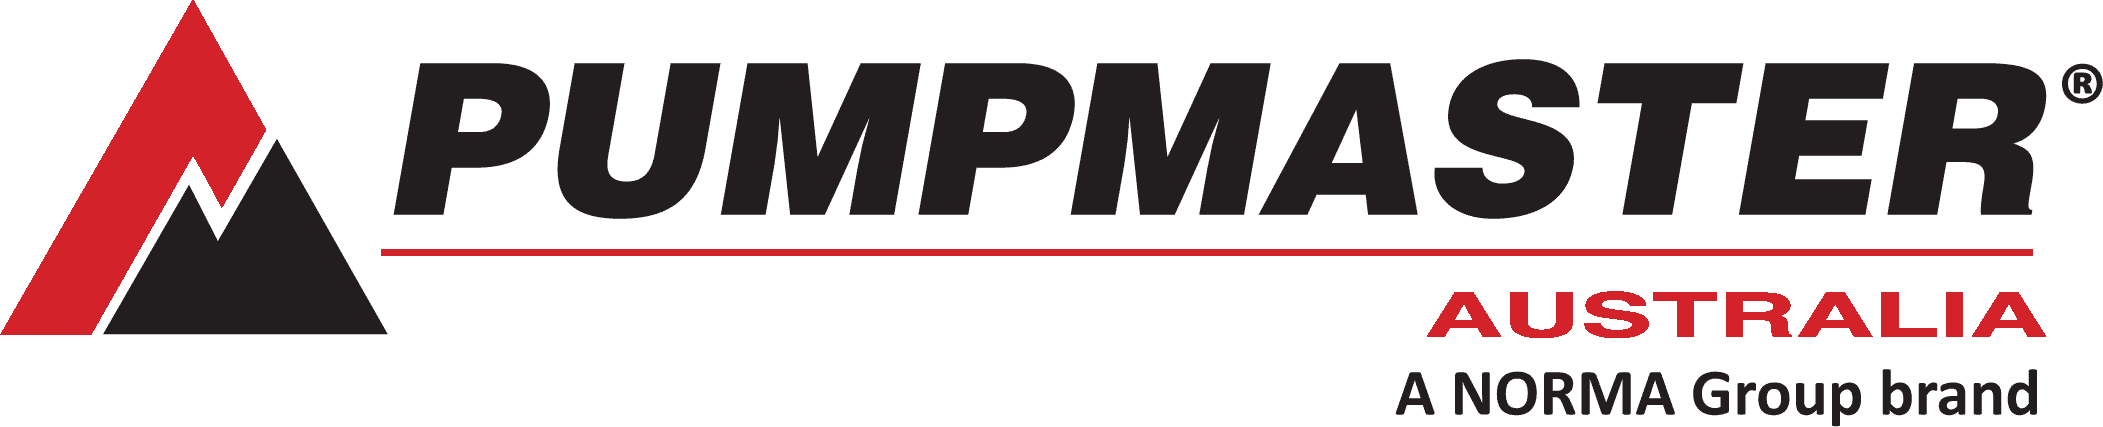 Pumpmaster logo